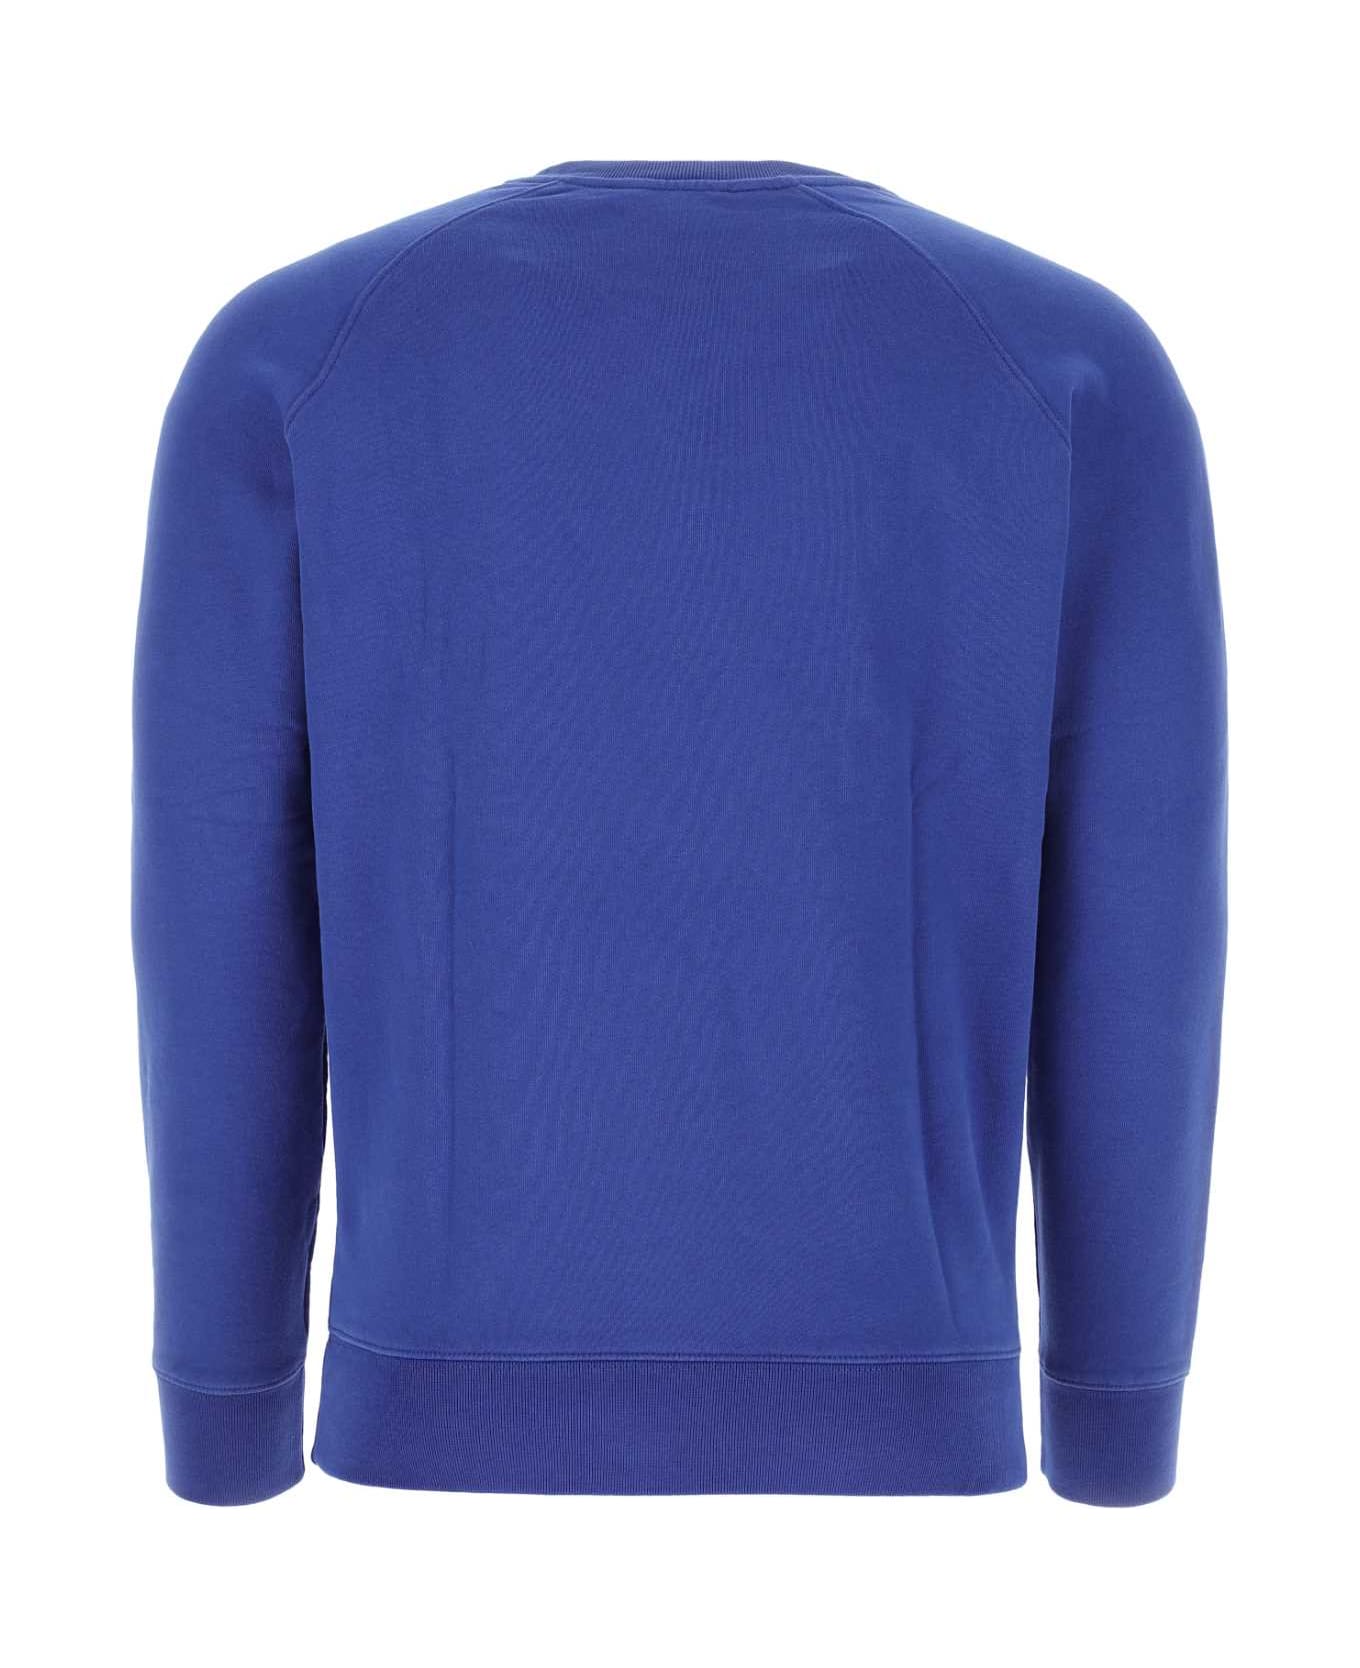 Maison Kitsuné Blue Cotton Sweatshirt - P485